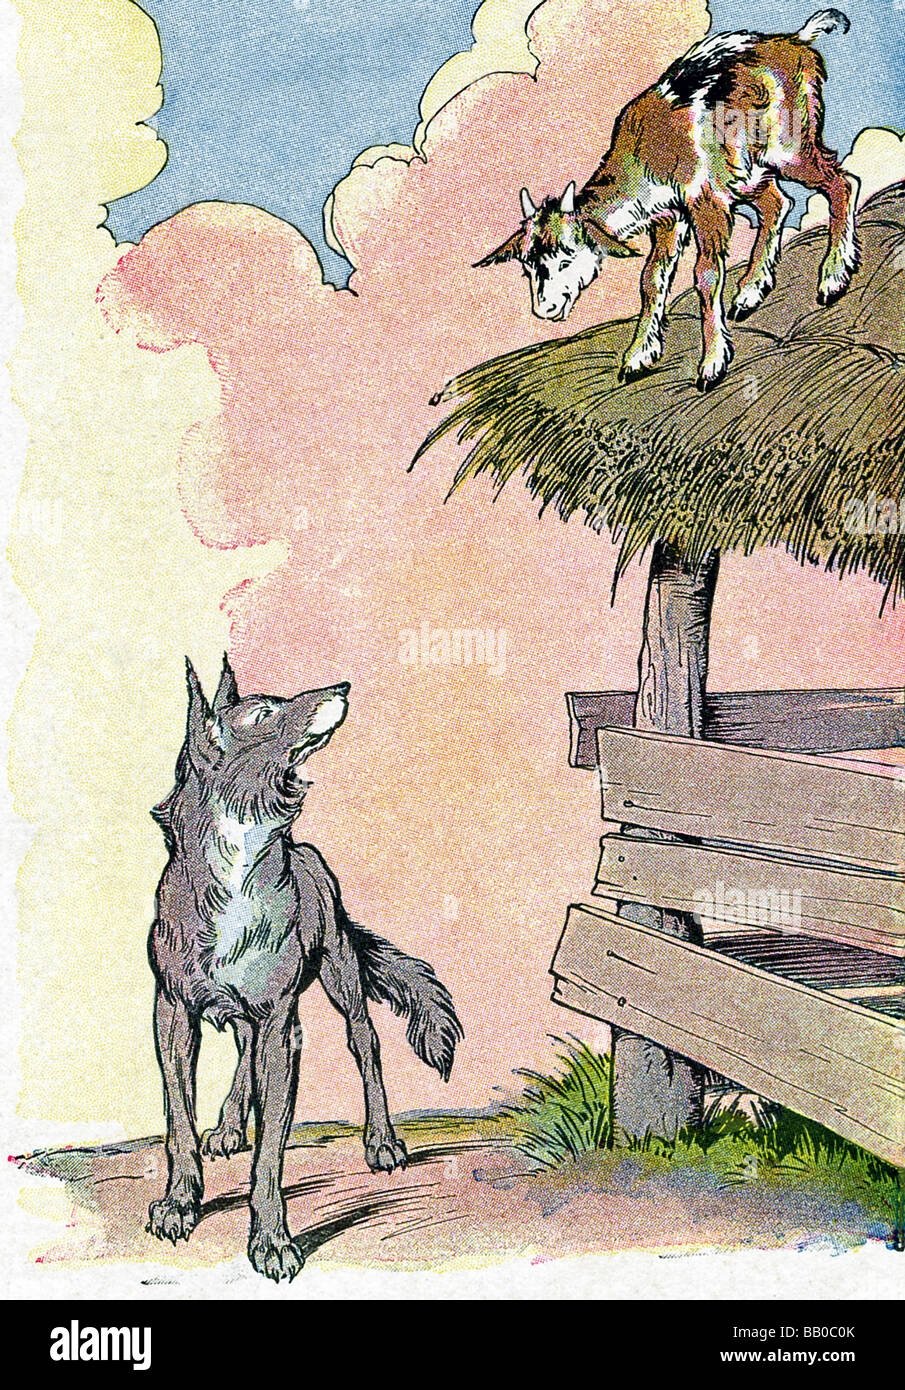 Голодные сказки. Басня Эзопа волк и козленок. Иллюстрация к басне Эзопа волк и козлёнок. Эзоп .басни Эзопа волк и козлёнок. Волк коза и козленок басня Лафонтена.